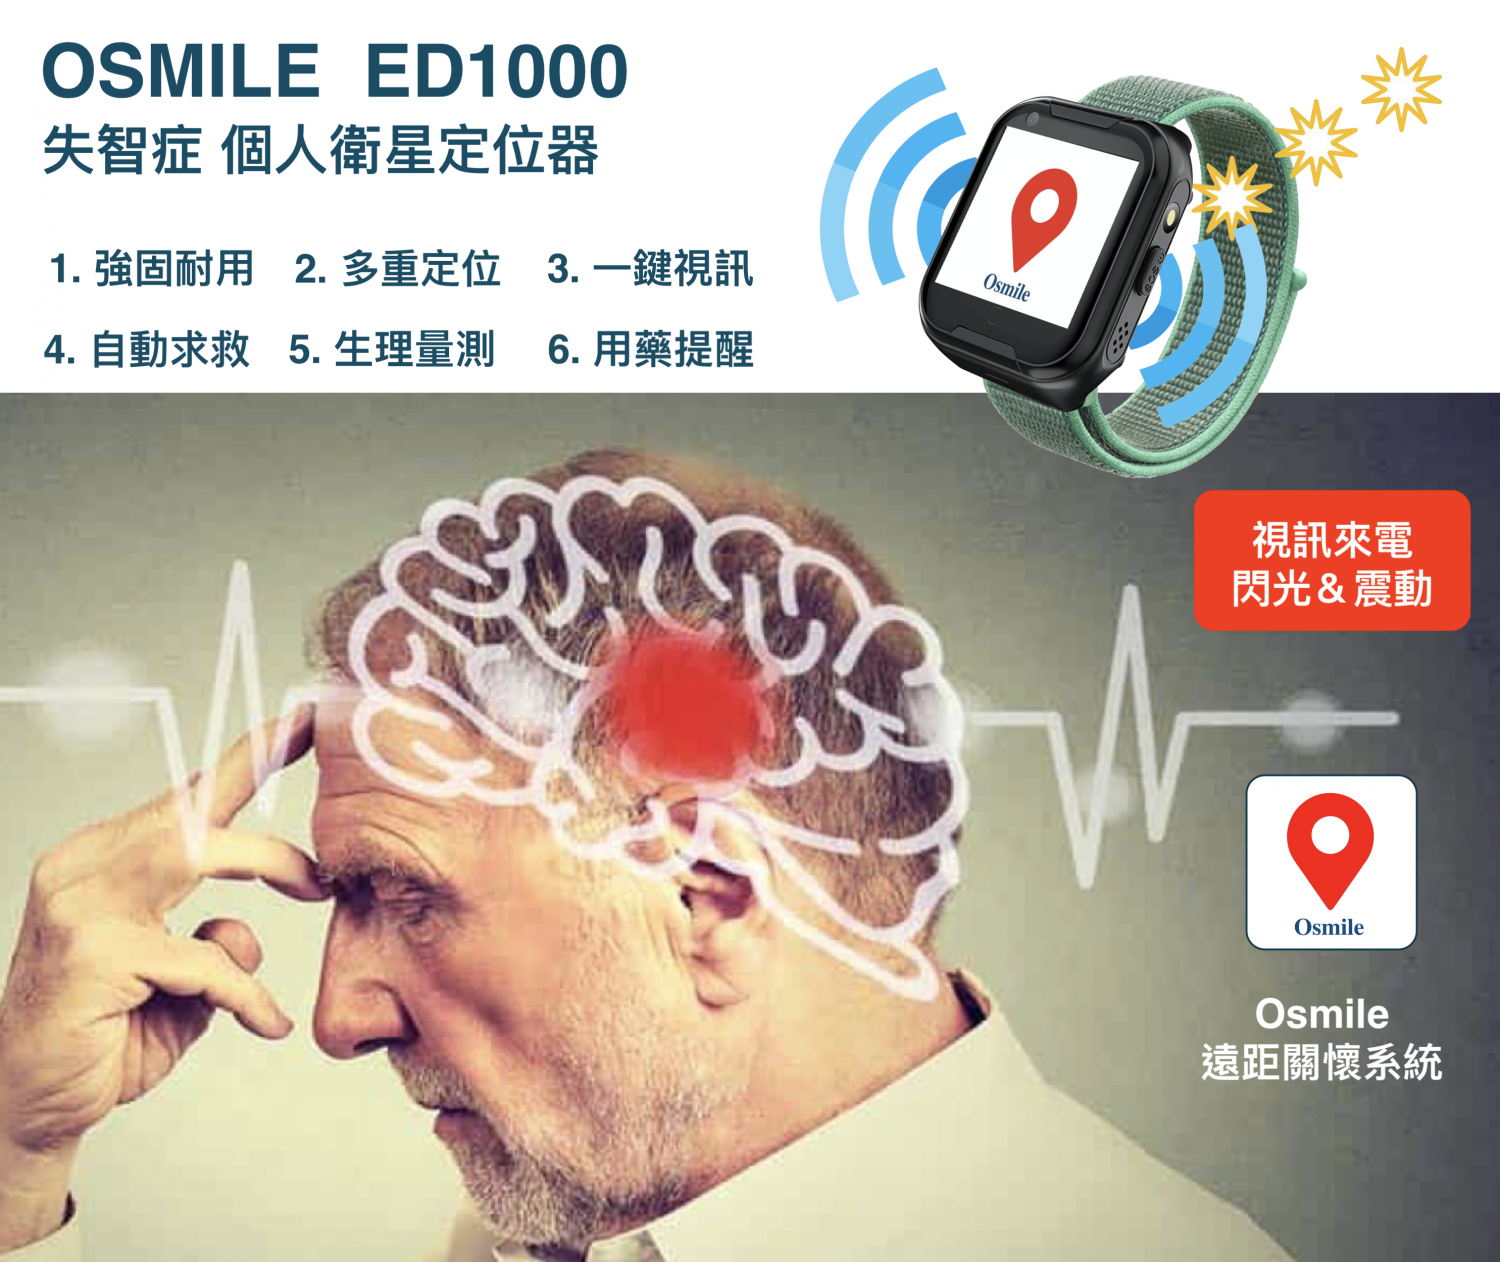 Osmile ED1000 (L) 聽力受損獨居老人跌倒偵測一鍵緊急求救與失智老人AGPS個人衛星定位手錶 (聽障老人一鍵求救定位手錶_來電震動閃光版_原廠一年保固)